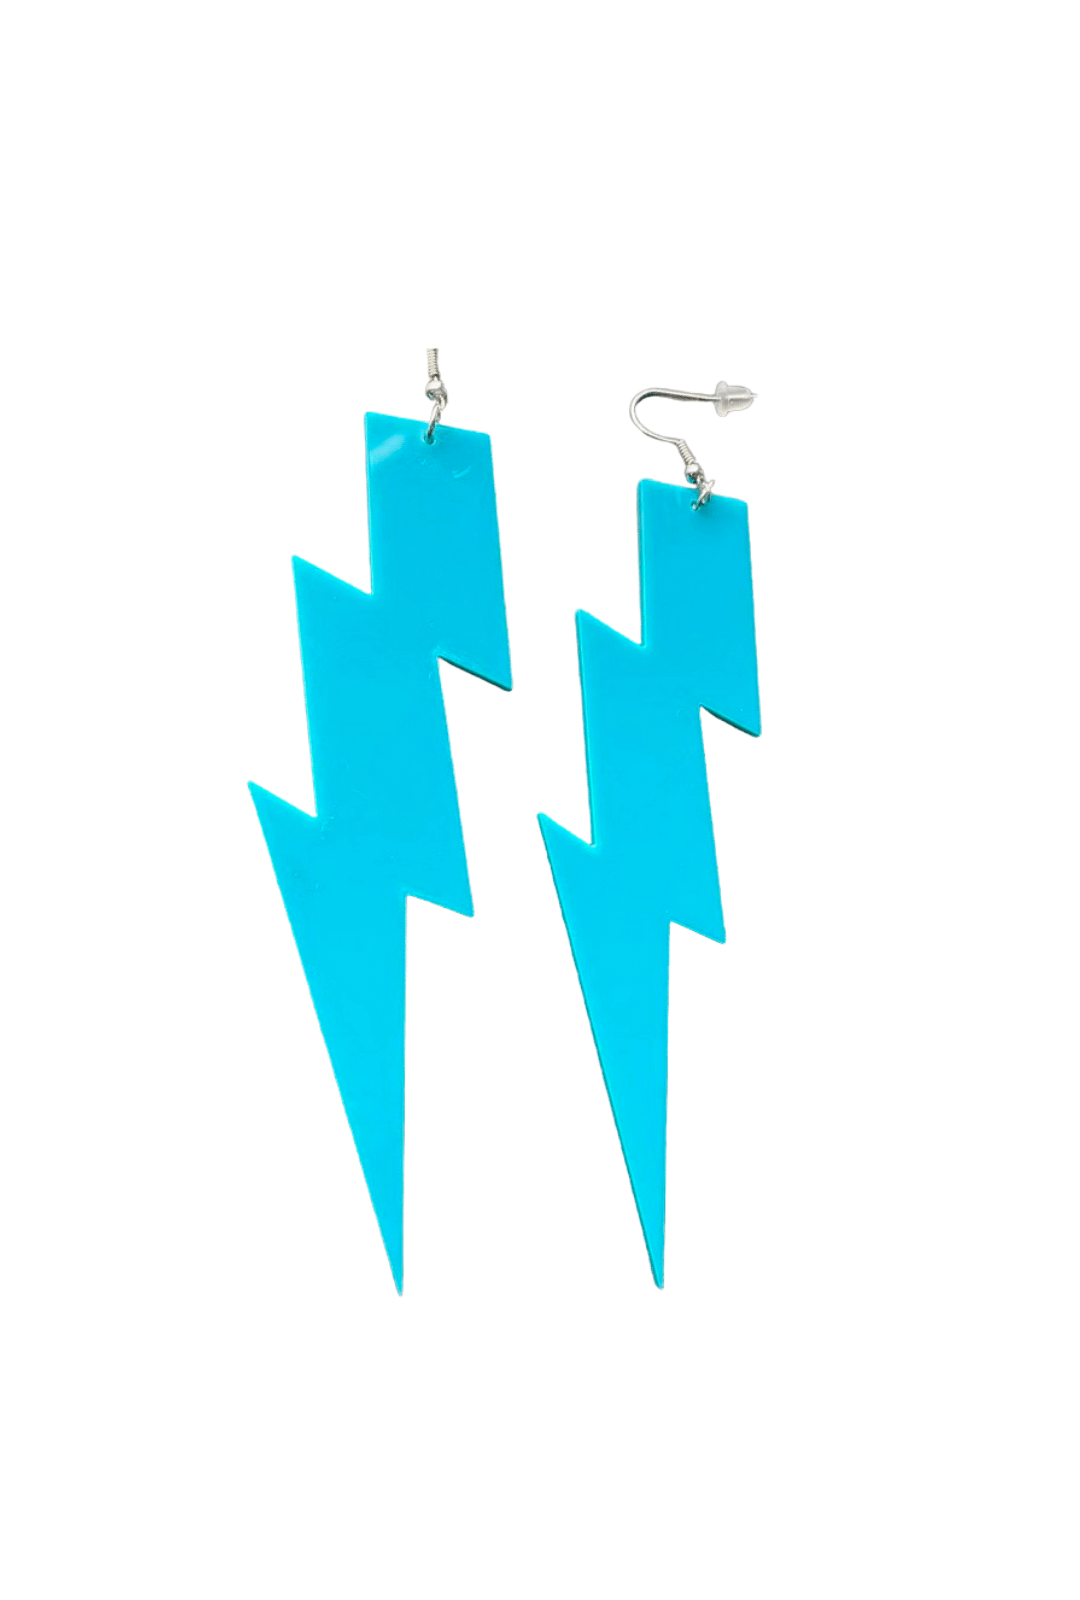 Neon Lightning Bolt Earrings  Bonafide Glam